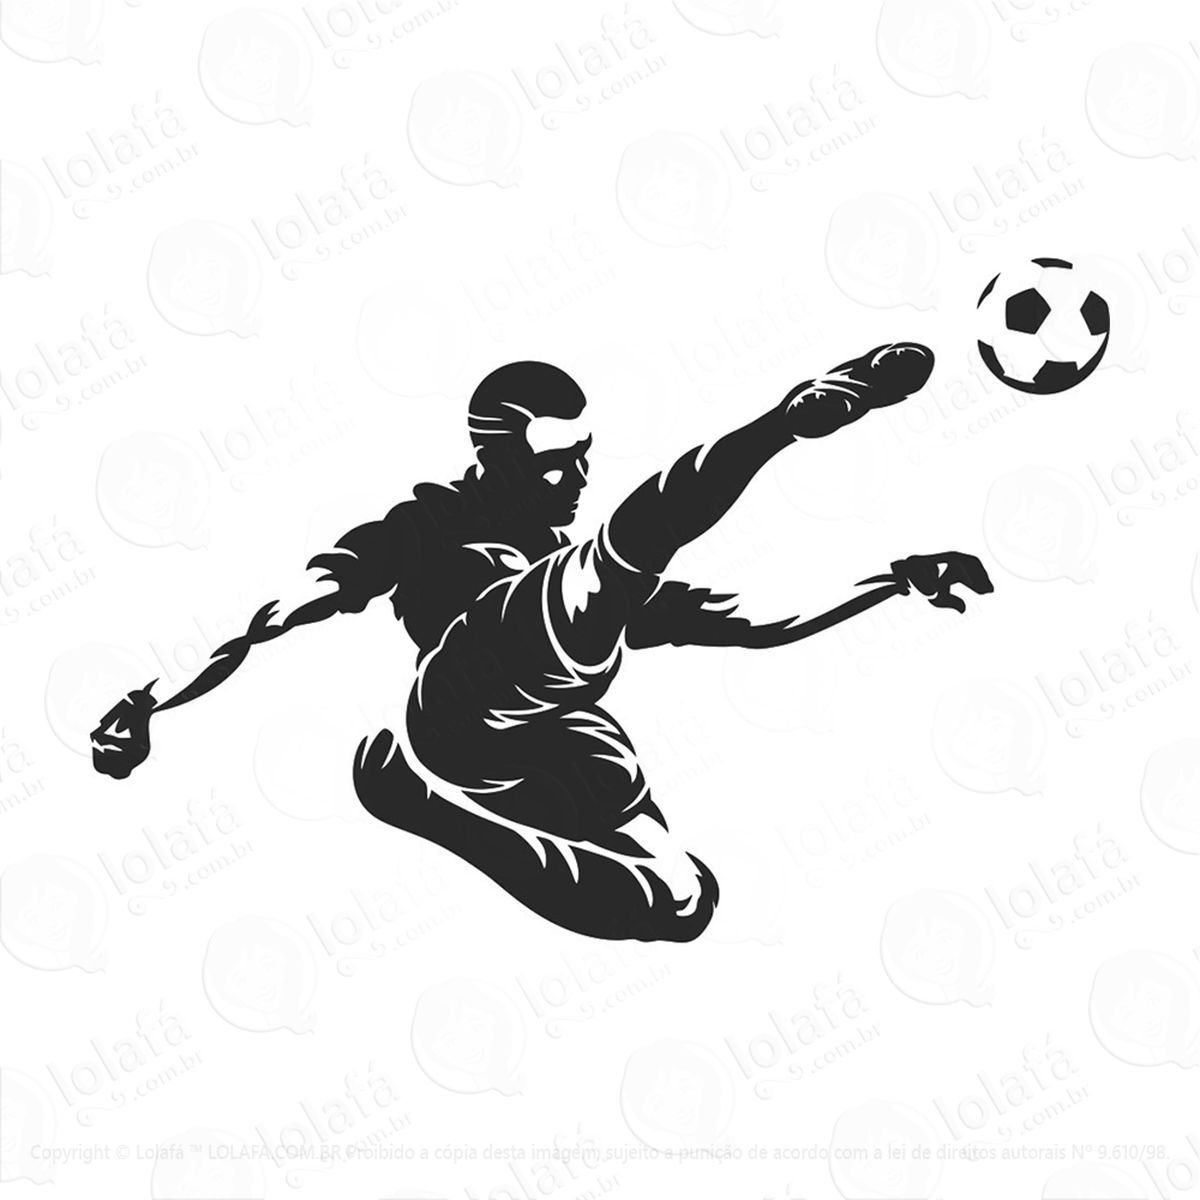 adesivo futebol esporte jogador 48x70cm mod:228